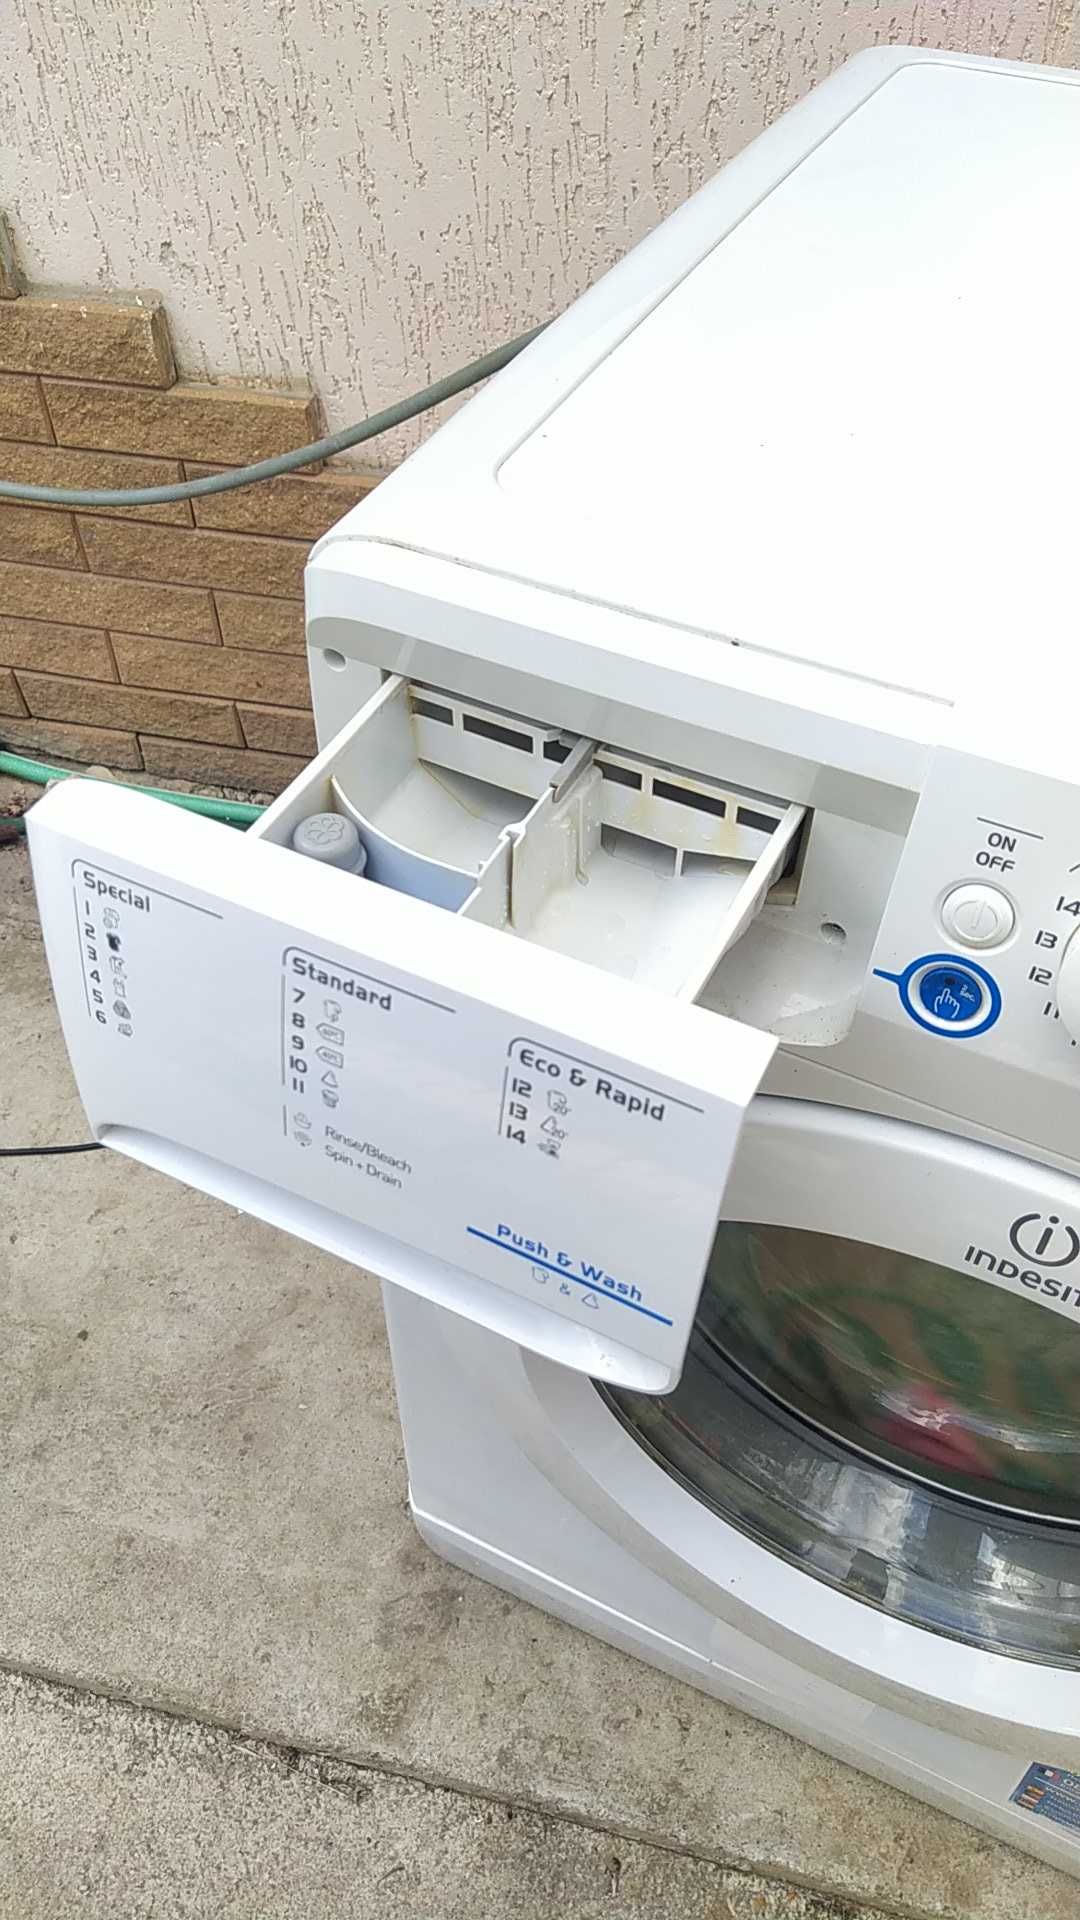 Автоматична пральна машина Indesit.9кг,віджим 1400об.хв.Працює чудово.